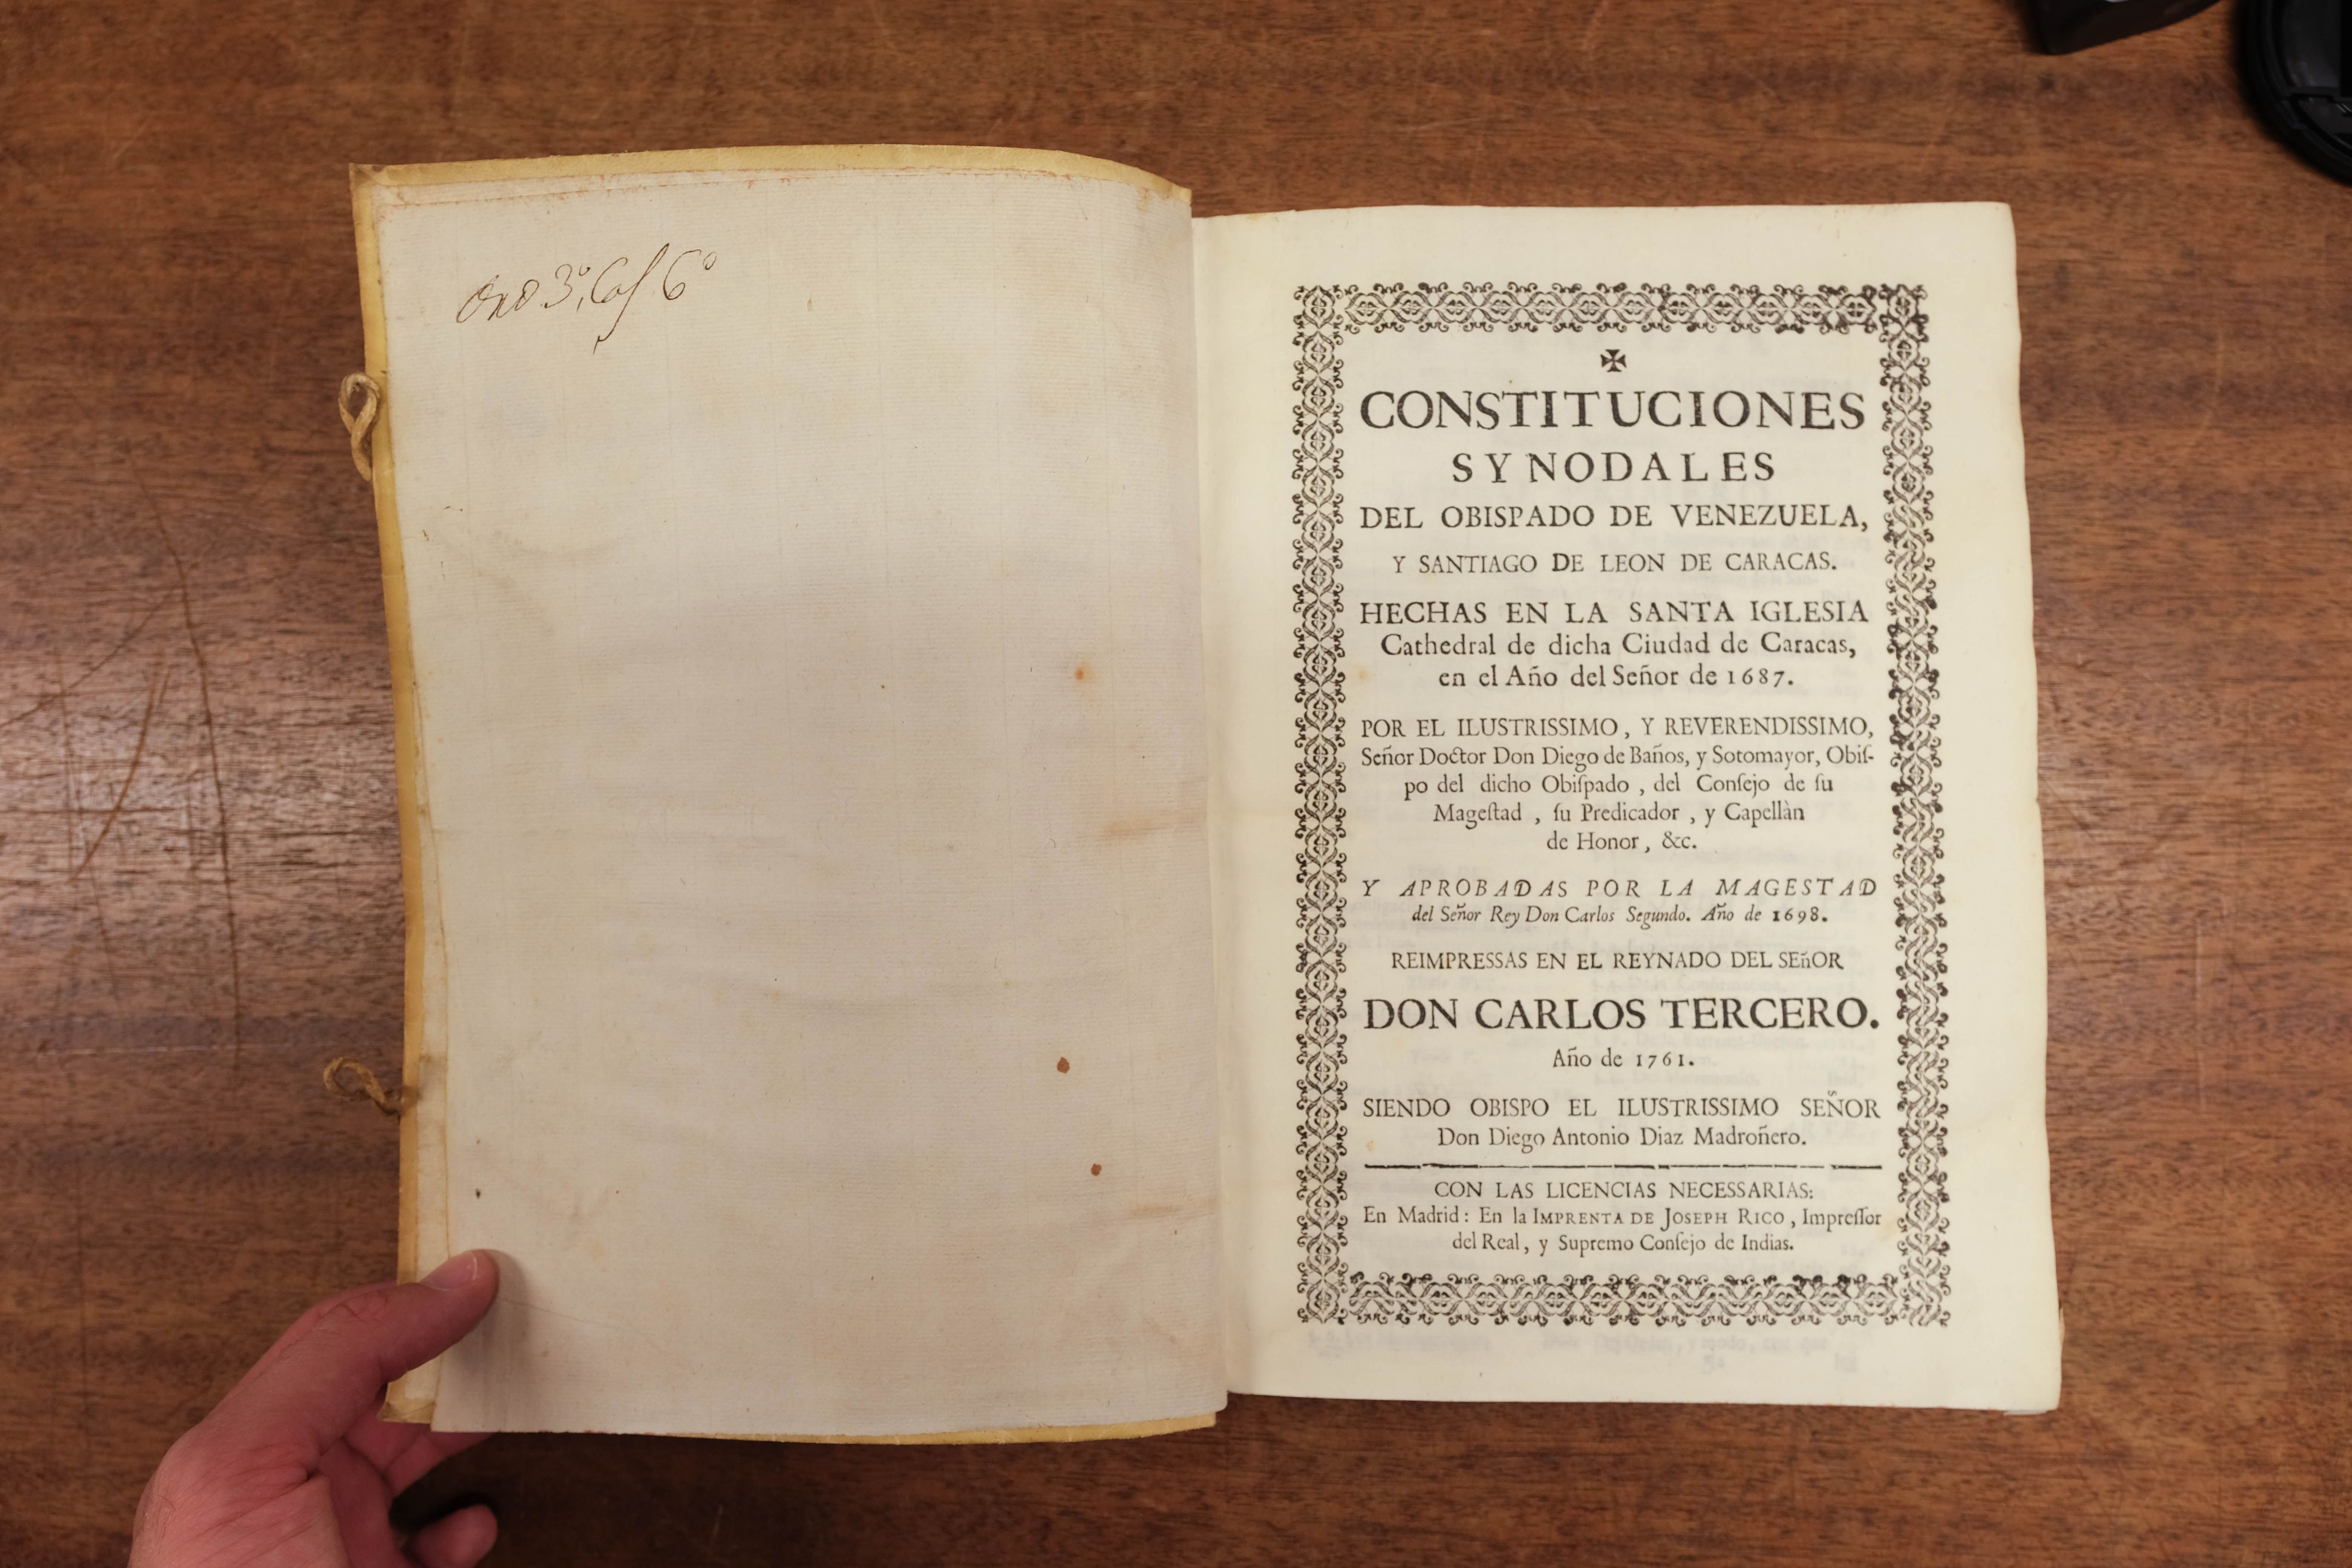 Baños y Sotomayor (Diego). Constituciones Synodales del Obispado de Venezuela, Madrid, 1761 - Image 4 of 9